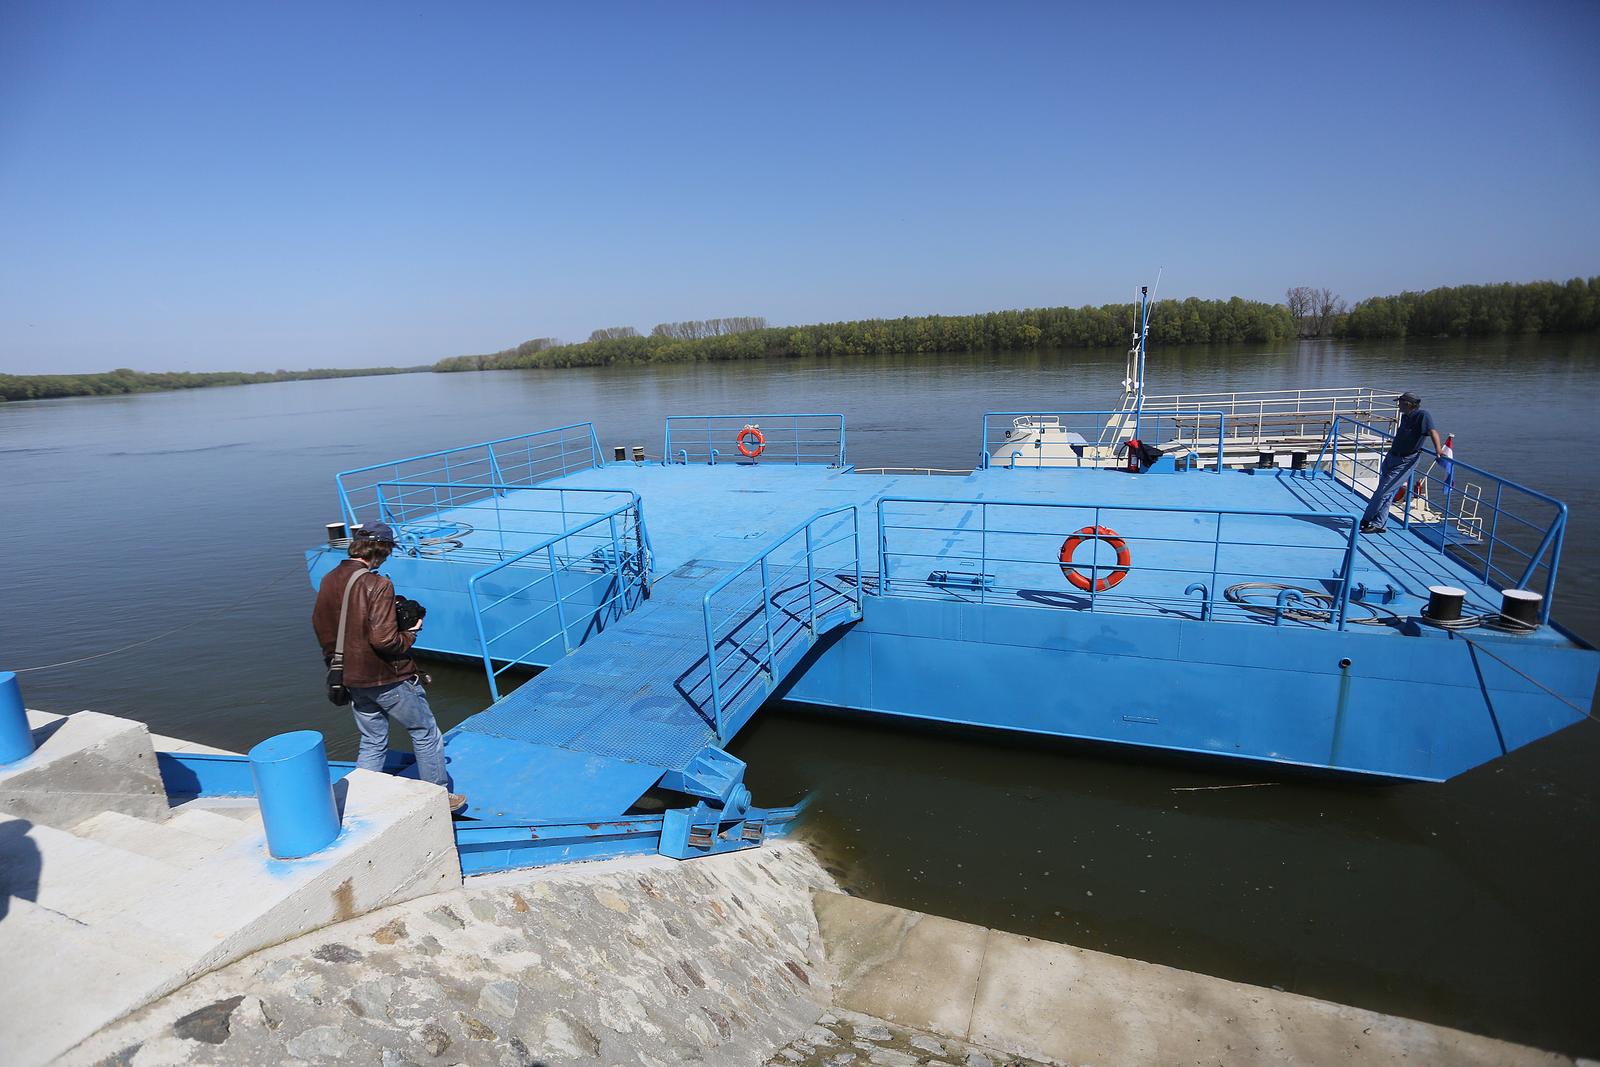 18.04.2013., Aljmas - Lucka uprava Vukovar otvorila putnicko pristaniste za rijecne kruzere na Dunavu.rPhoto: Marko Mrkonjic/PIXSELL